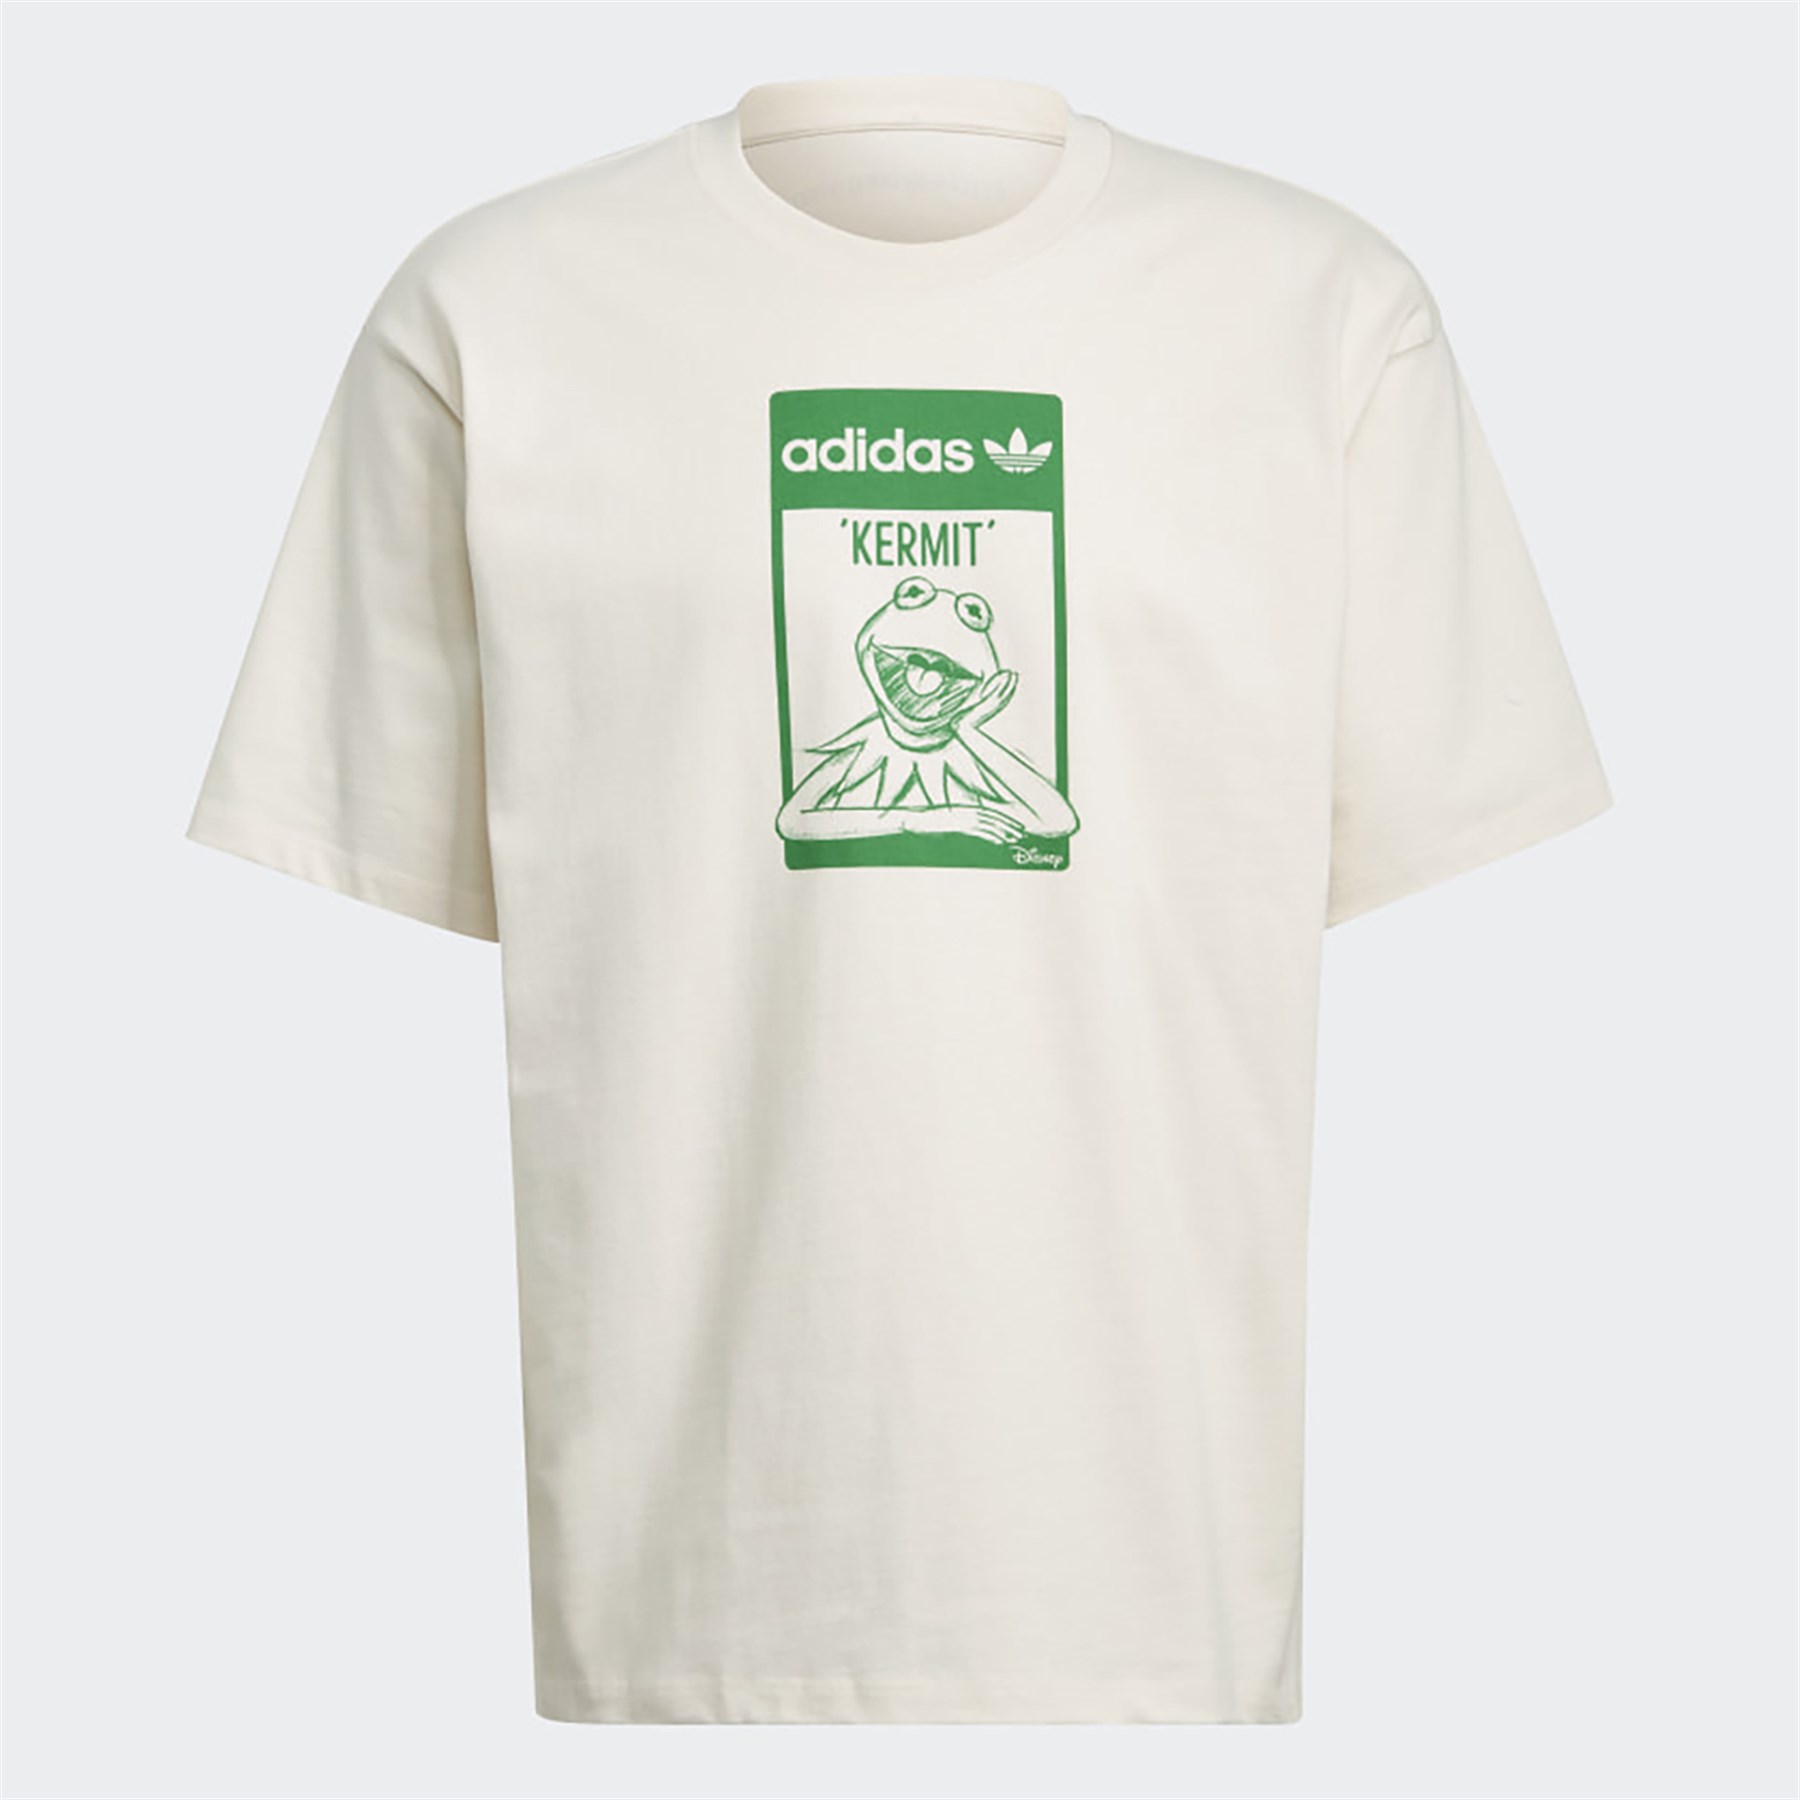 Adidas Günlük T-shirt Tee Kermit F Gq4152 TEE KERMIT F